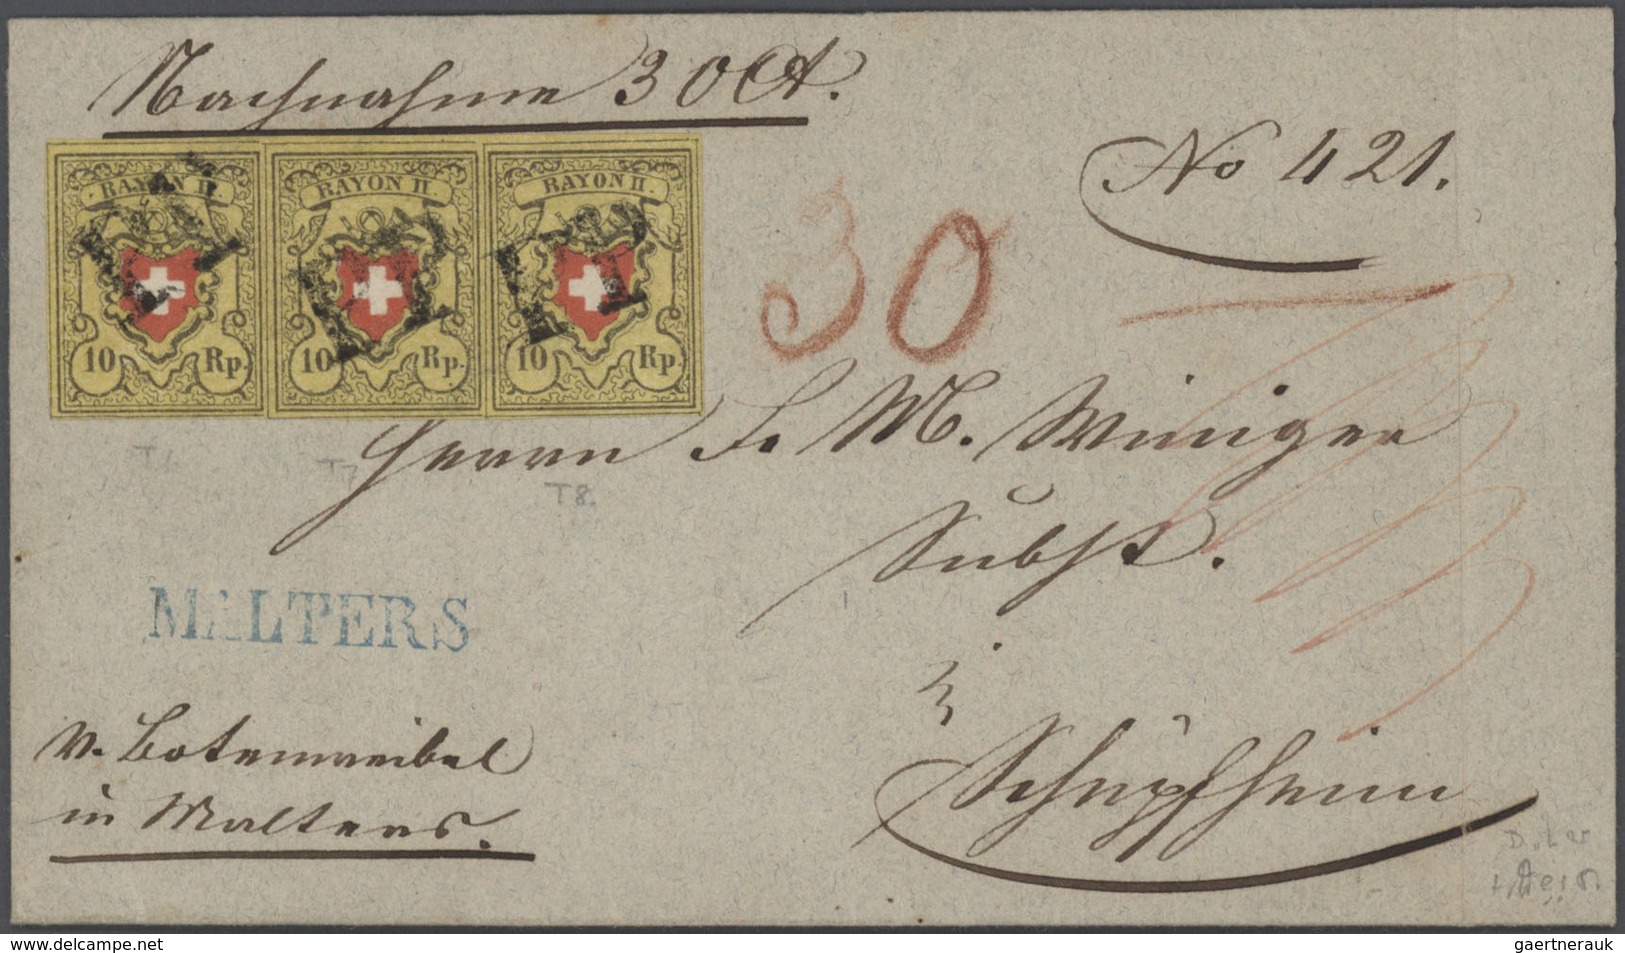 Schweiz: 1850/52: RAYON I - III, hochkarätige Partie von 18 Briefen und Belegen mit Einzel-, Bunt- u